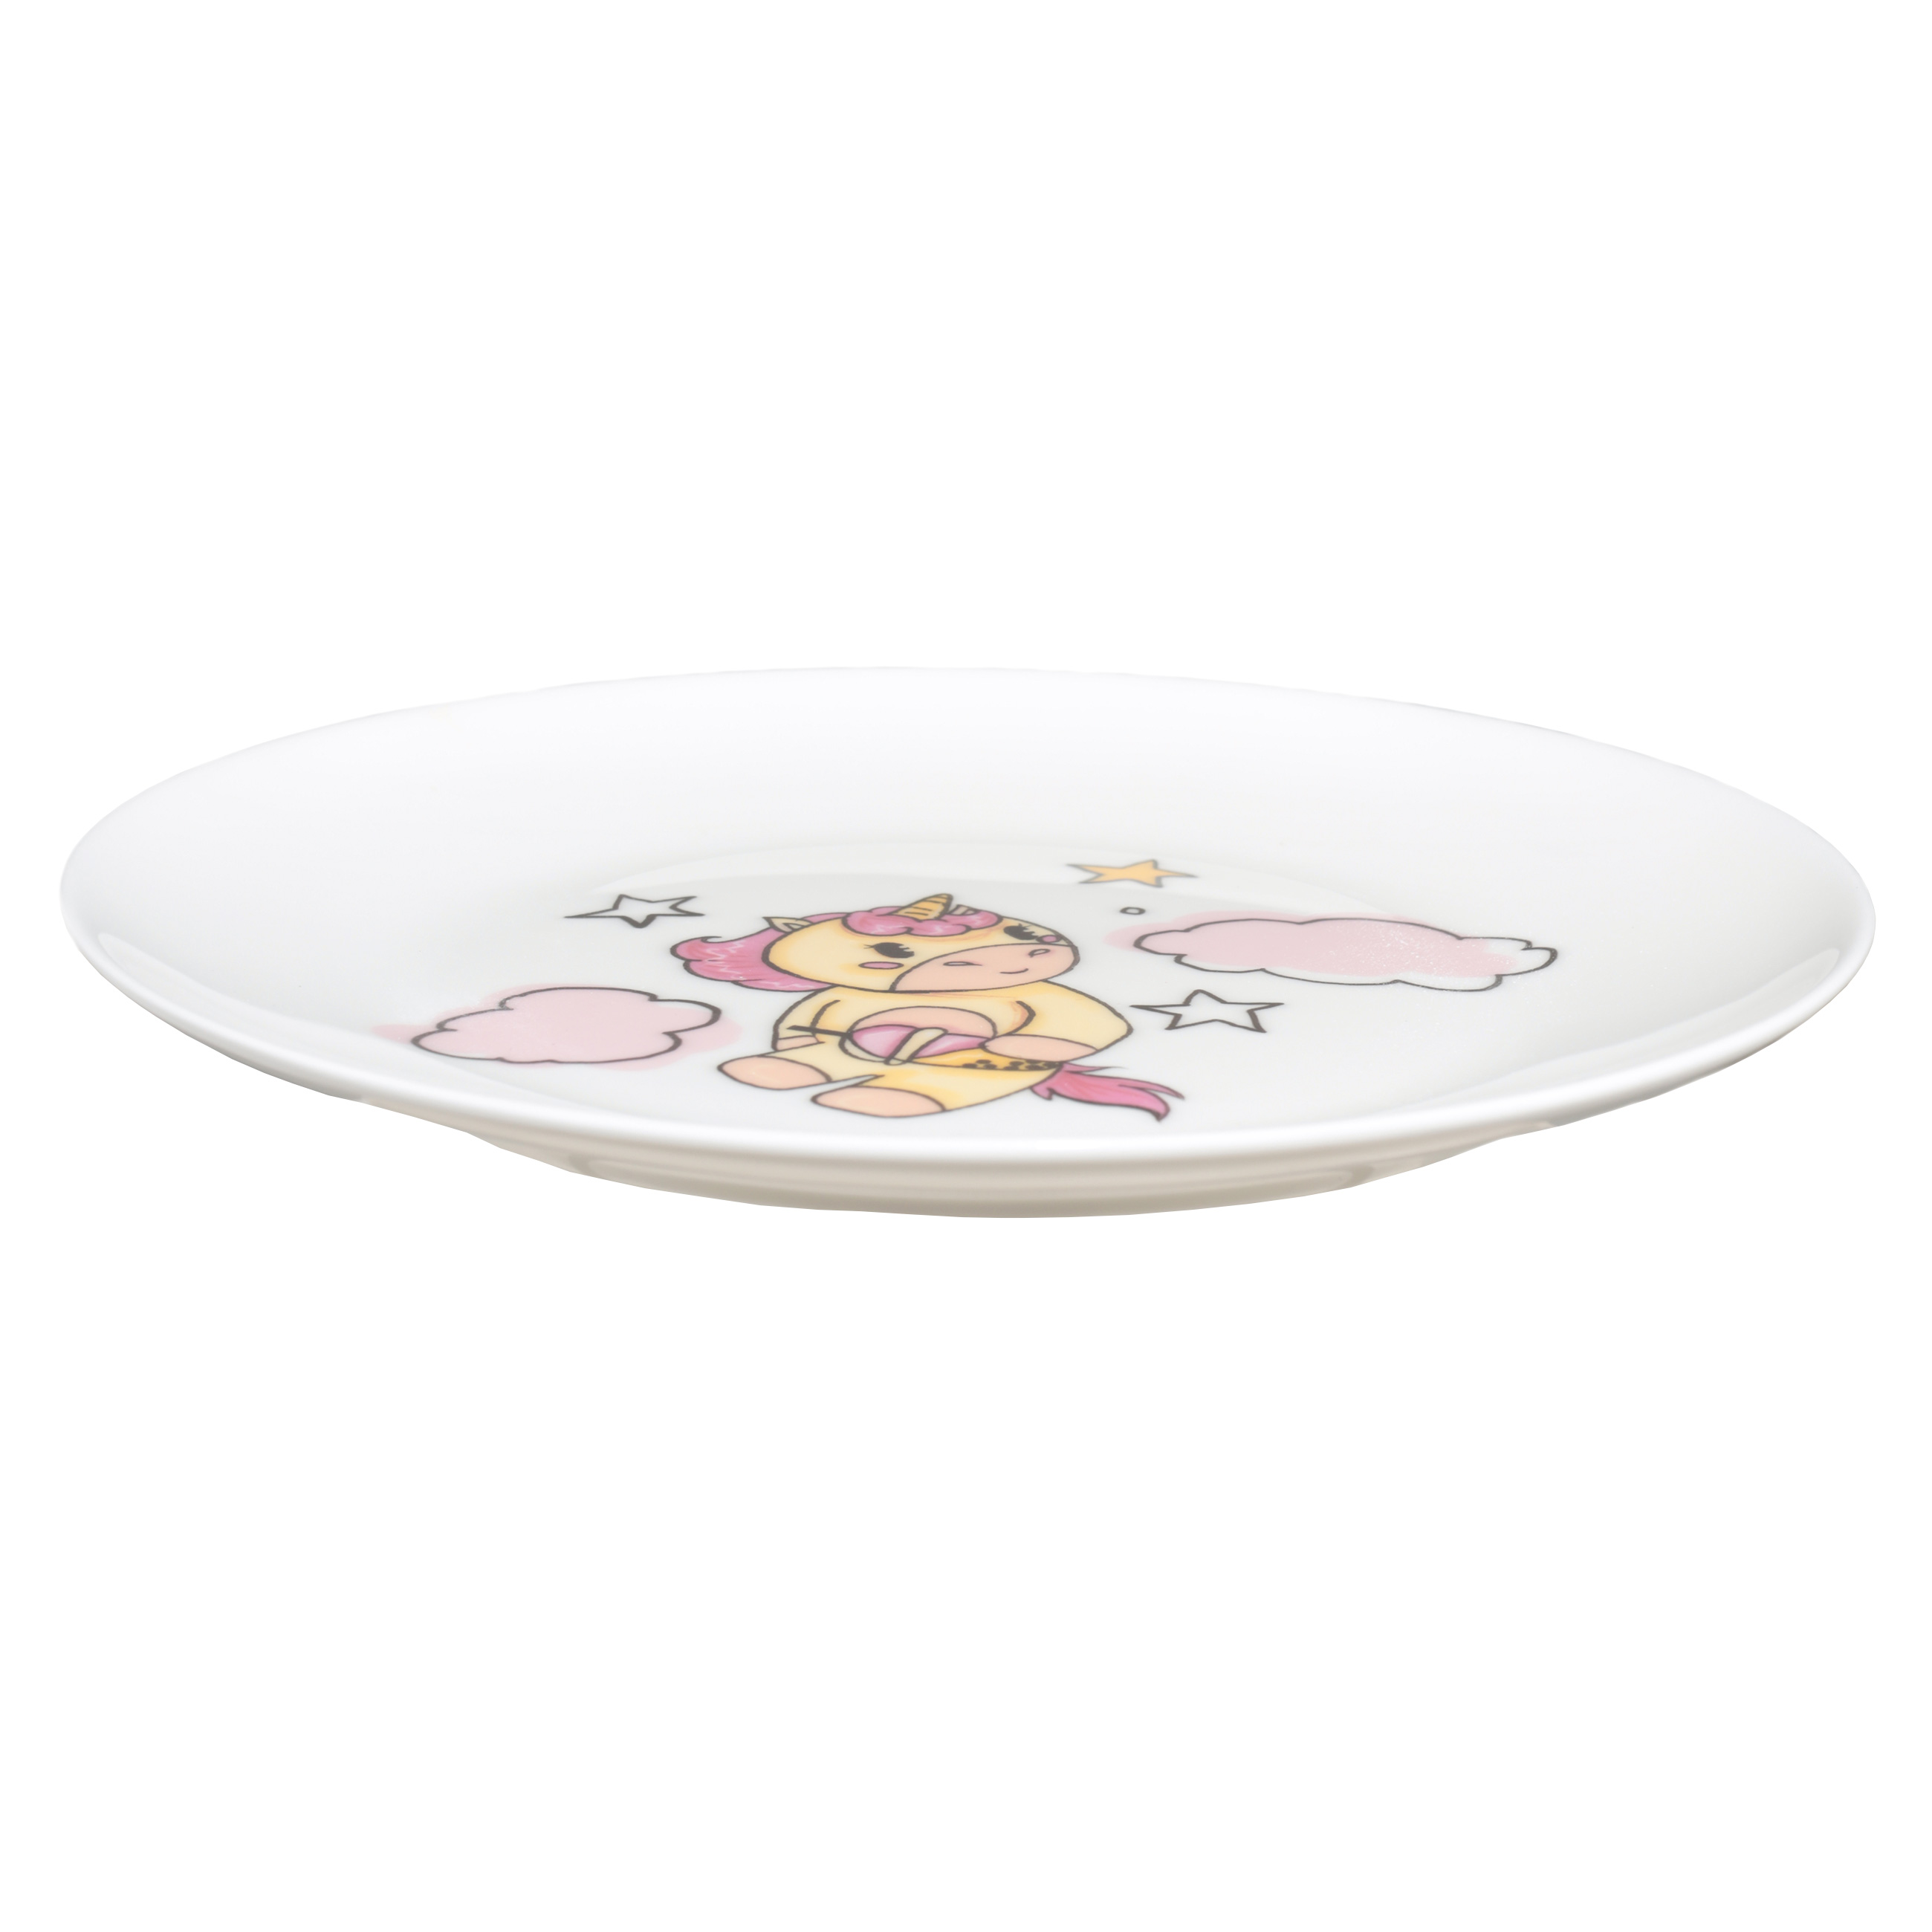 Набор посуды, детский, 3 пр, фарфор F, бело-розовый, Единорог в облаках, Unicorn изображение № 3